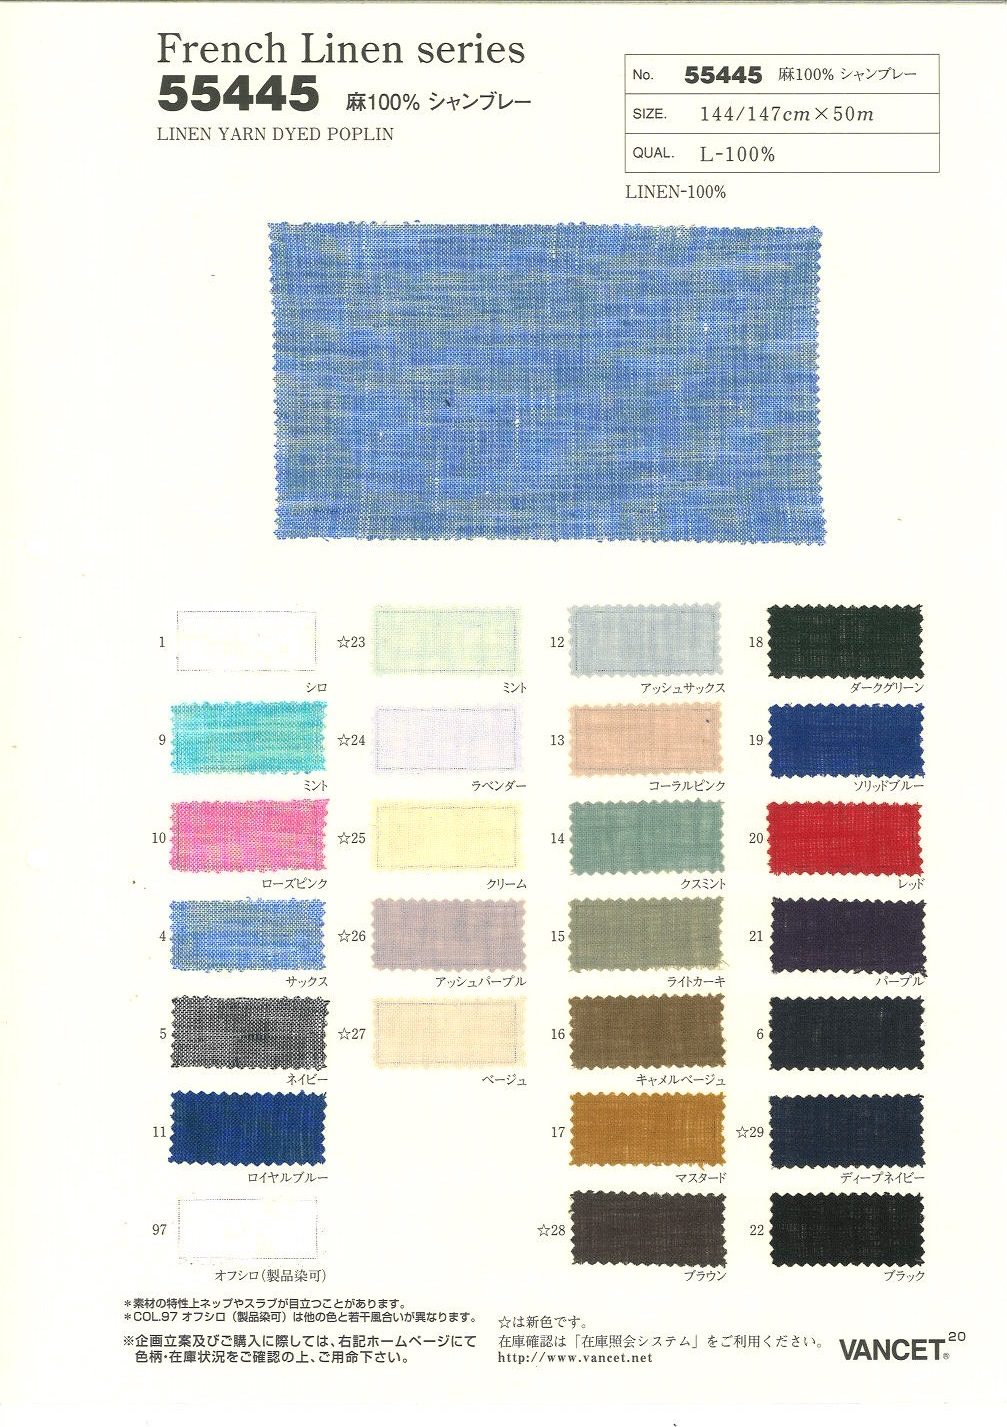 55445 Französische Leinenserie L100% Chambray[Textilgewebe] VANCET